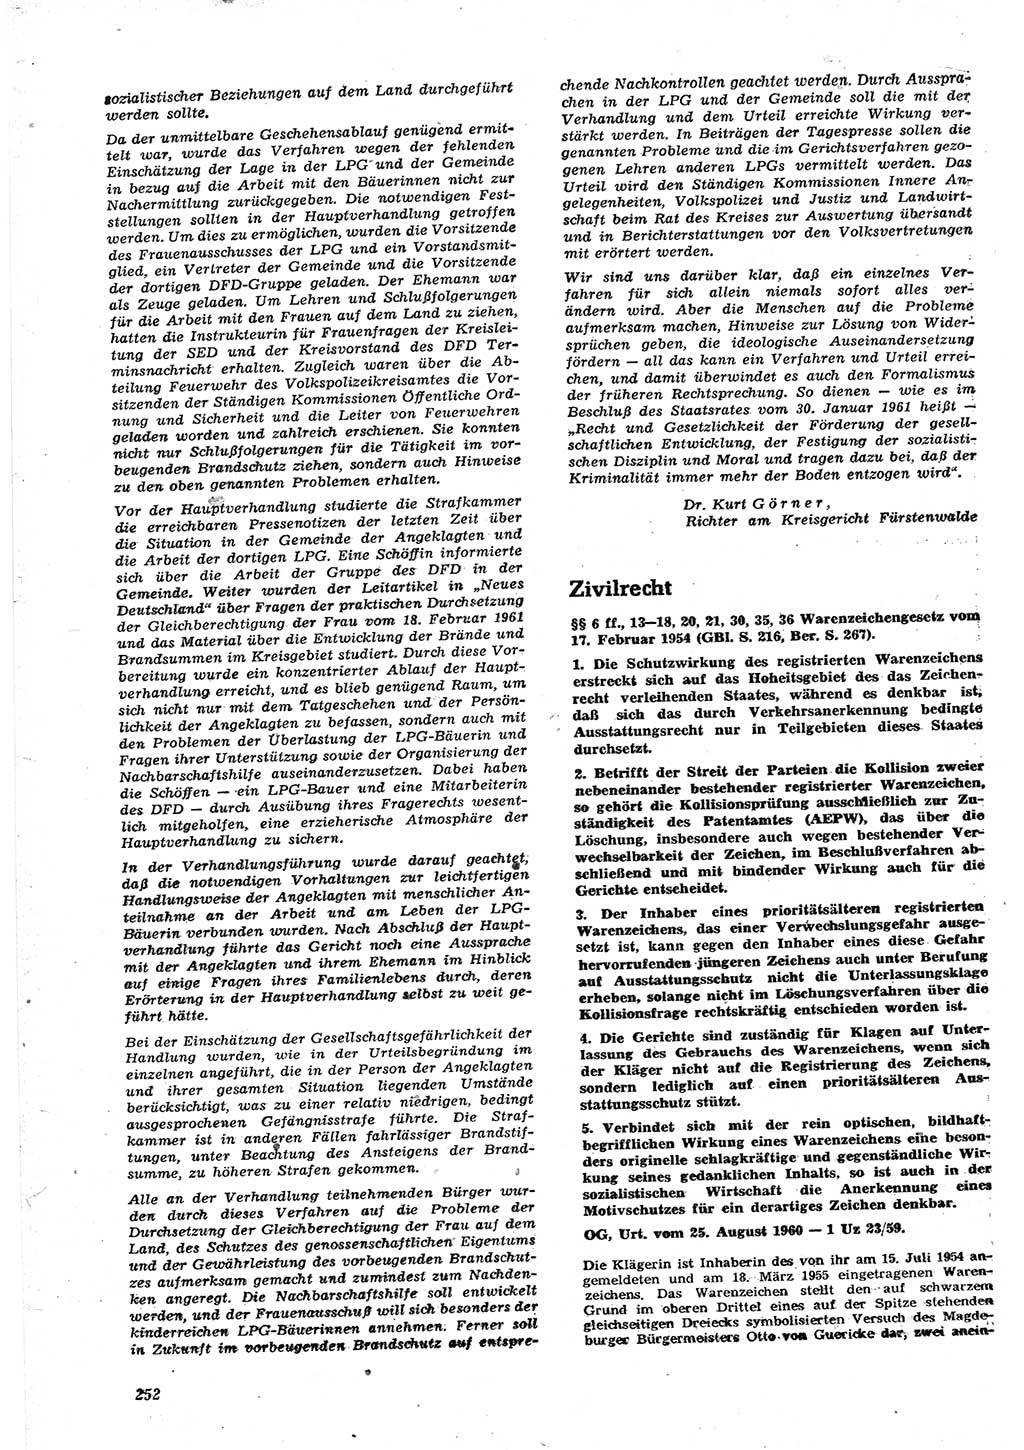 Neue Justiz (NJ), Zeitschrift für Recht und Rechtswissenschaft [Deutsche Demokratische Republik (DDR)], 15. Jahrgang 1961, Seite 252 (NJ DDR 1961, S. 252)